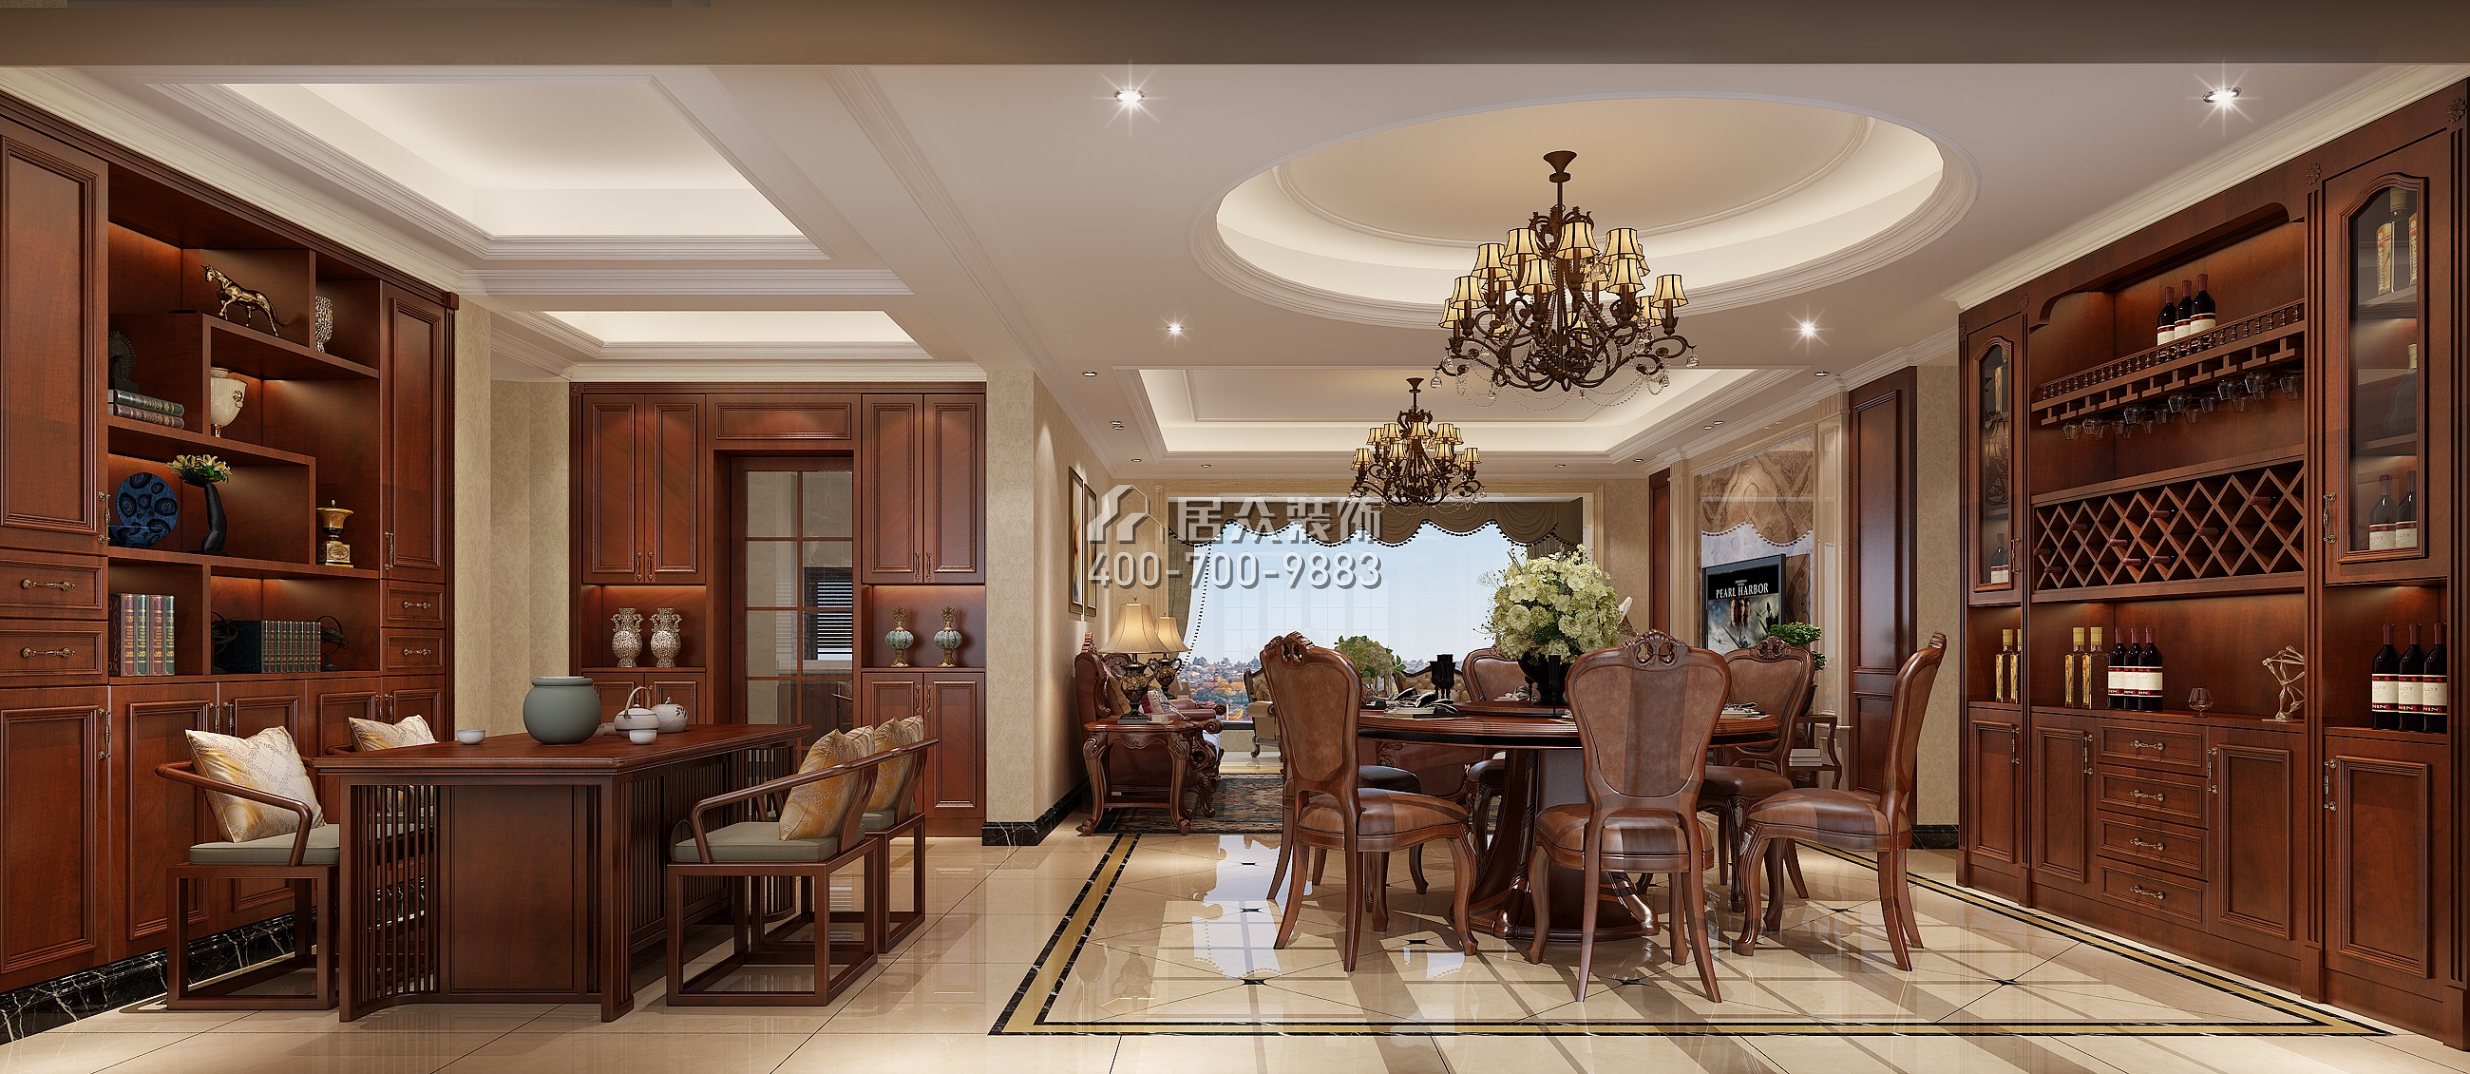 星河丹堤180平方米欧式风格平层户型餐厅kok电竞平台效果图